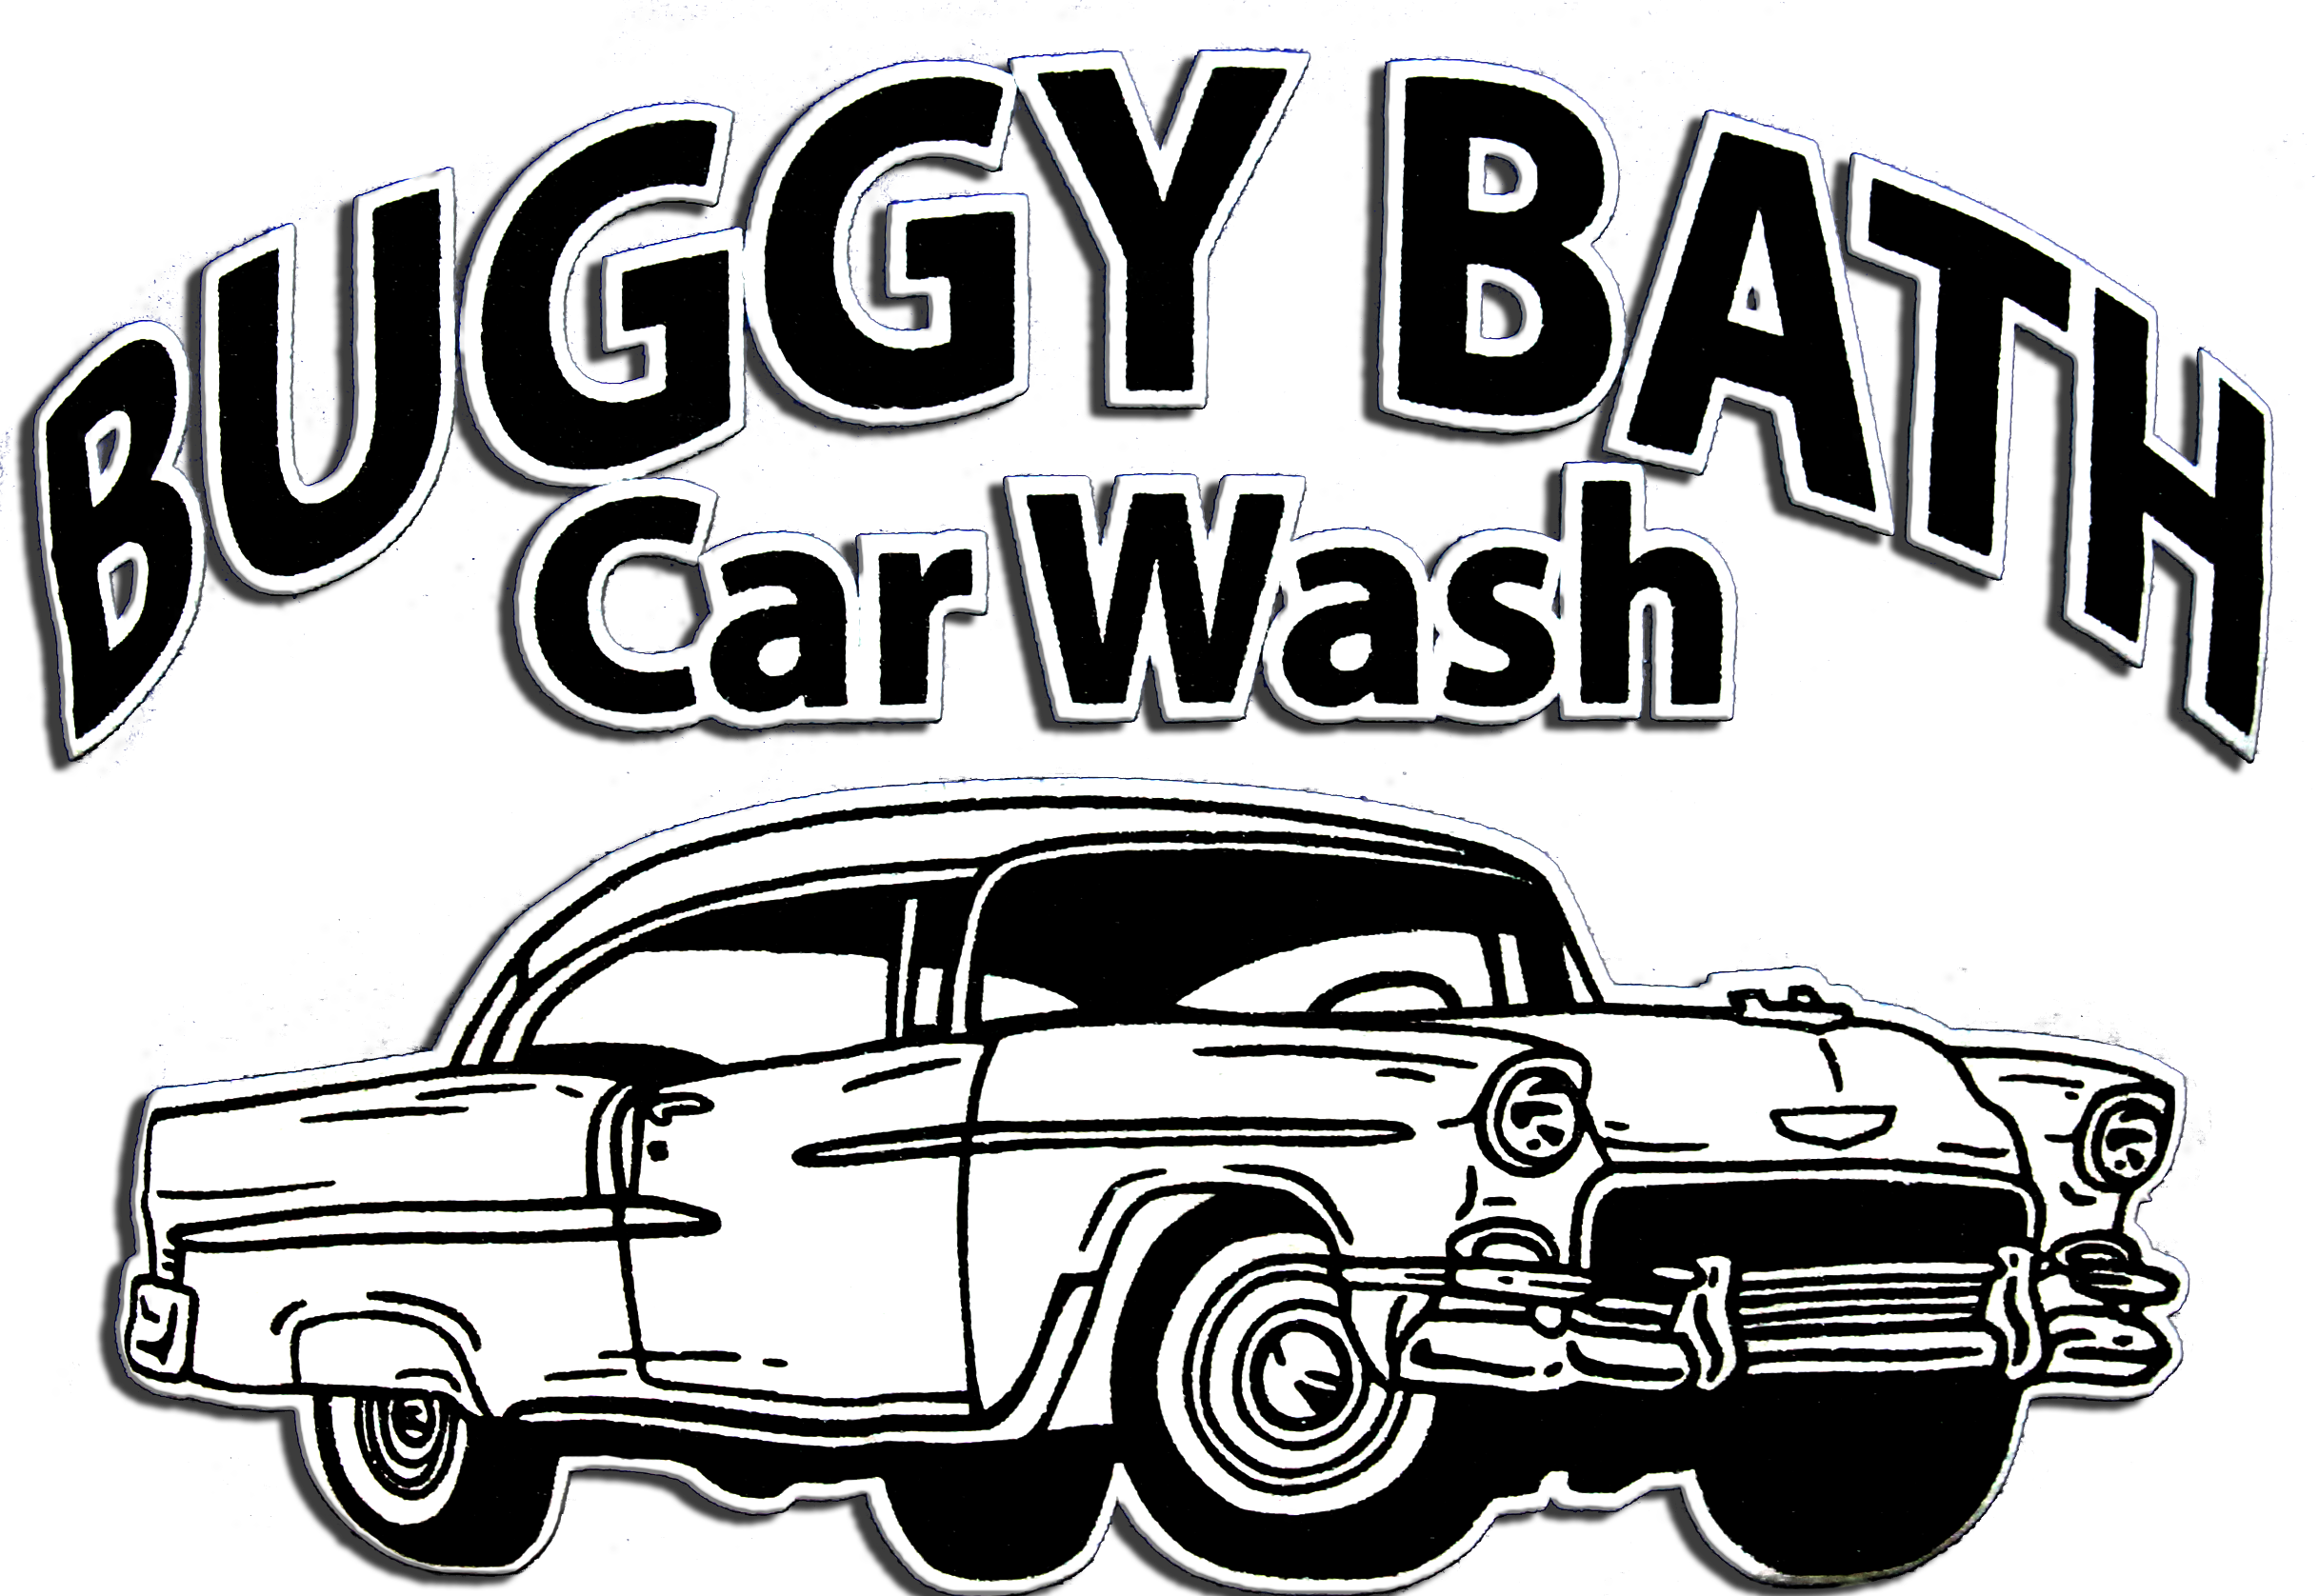 Buggy Bath Car Wash Vintage Sign PNG image